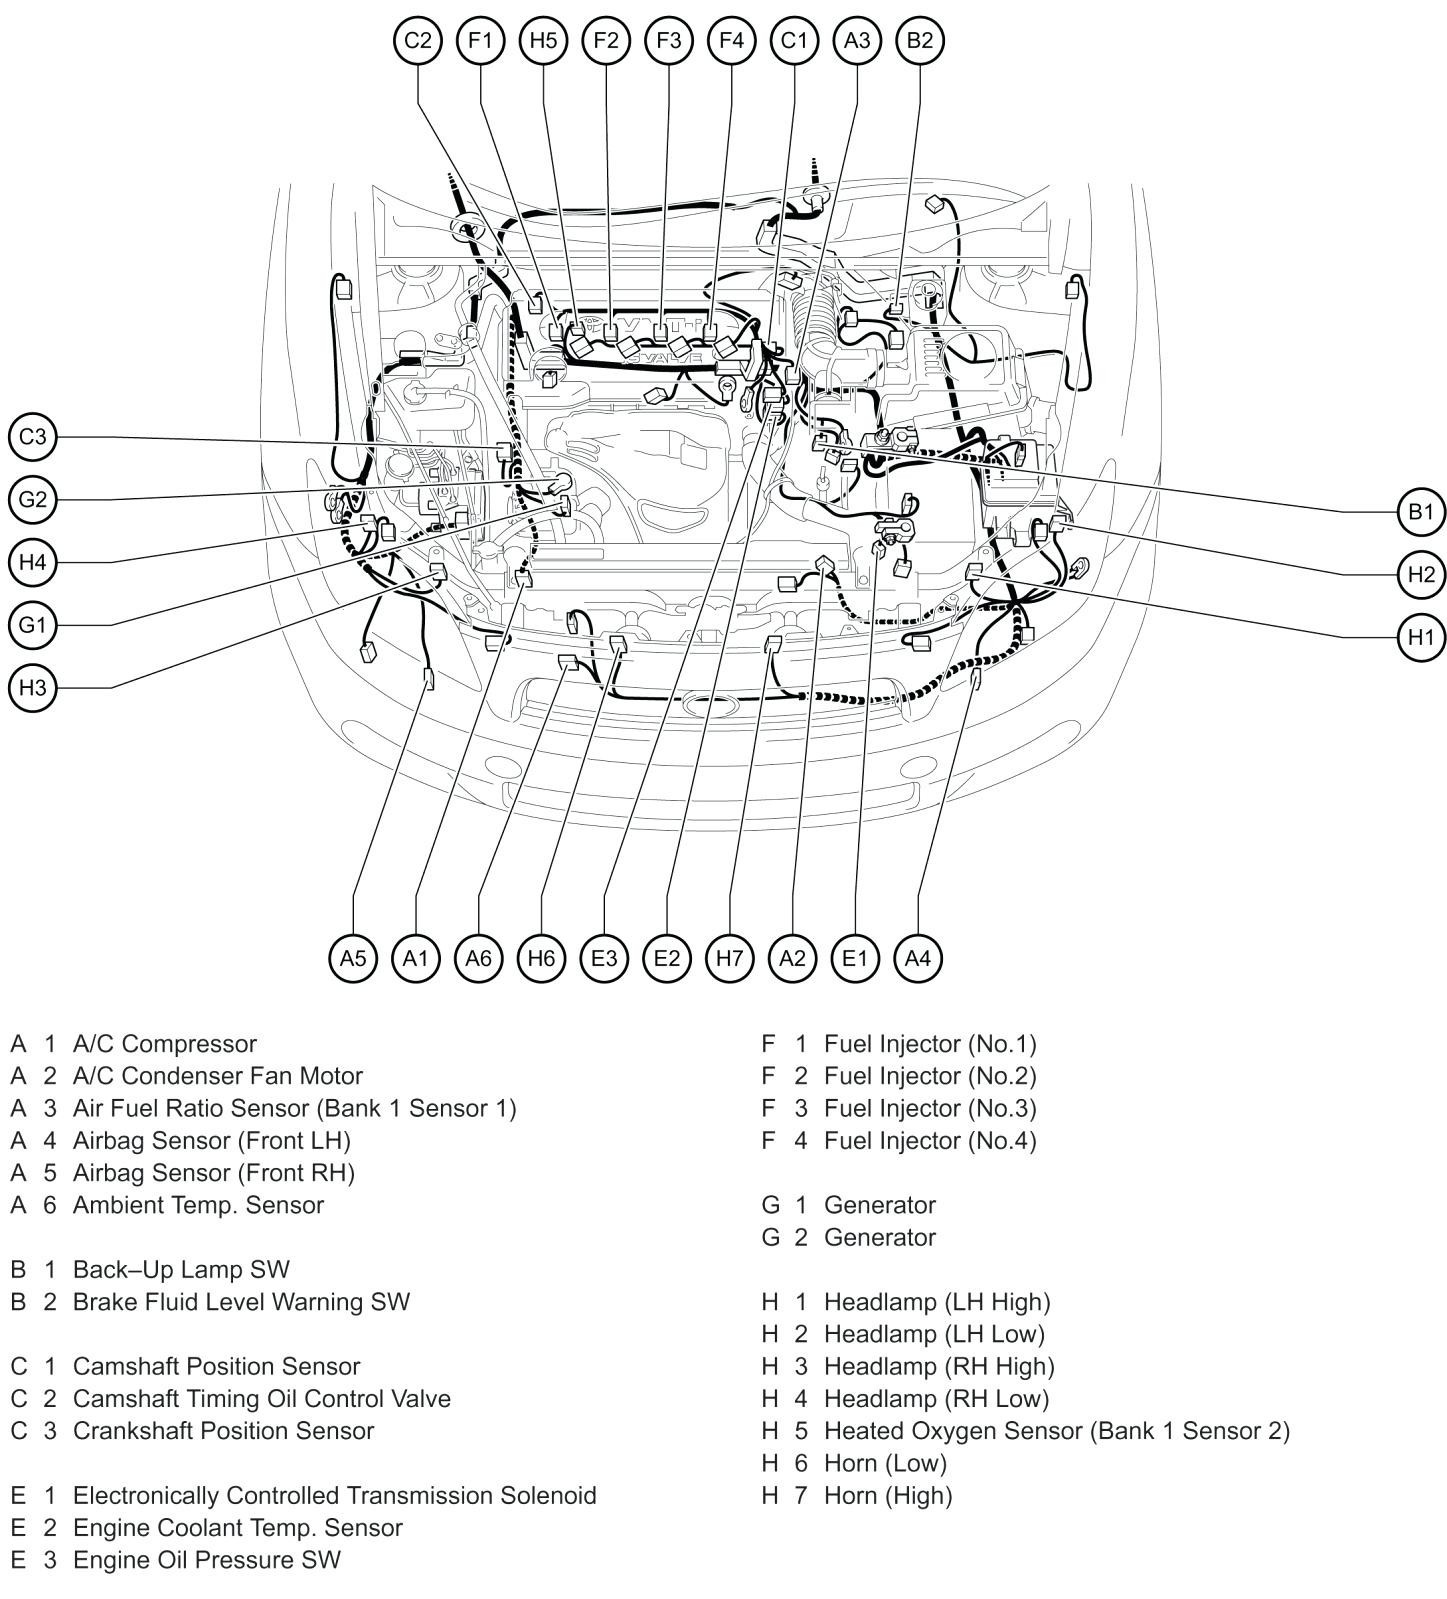 2006 scion xa fuse diagram enthusiast wiring diagrams u2022 rh rasalibre co 2005 Scion xB Parts Diagram 2009 Scion xB Fuse Diagram